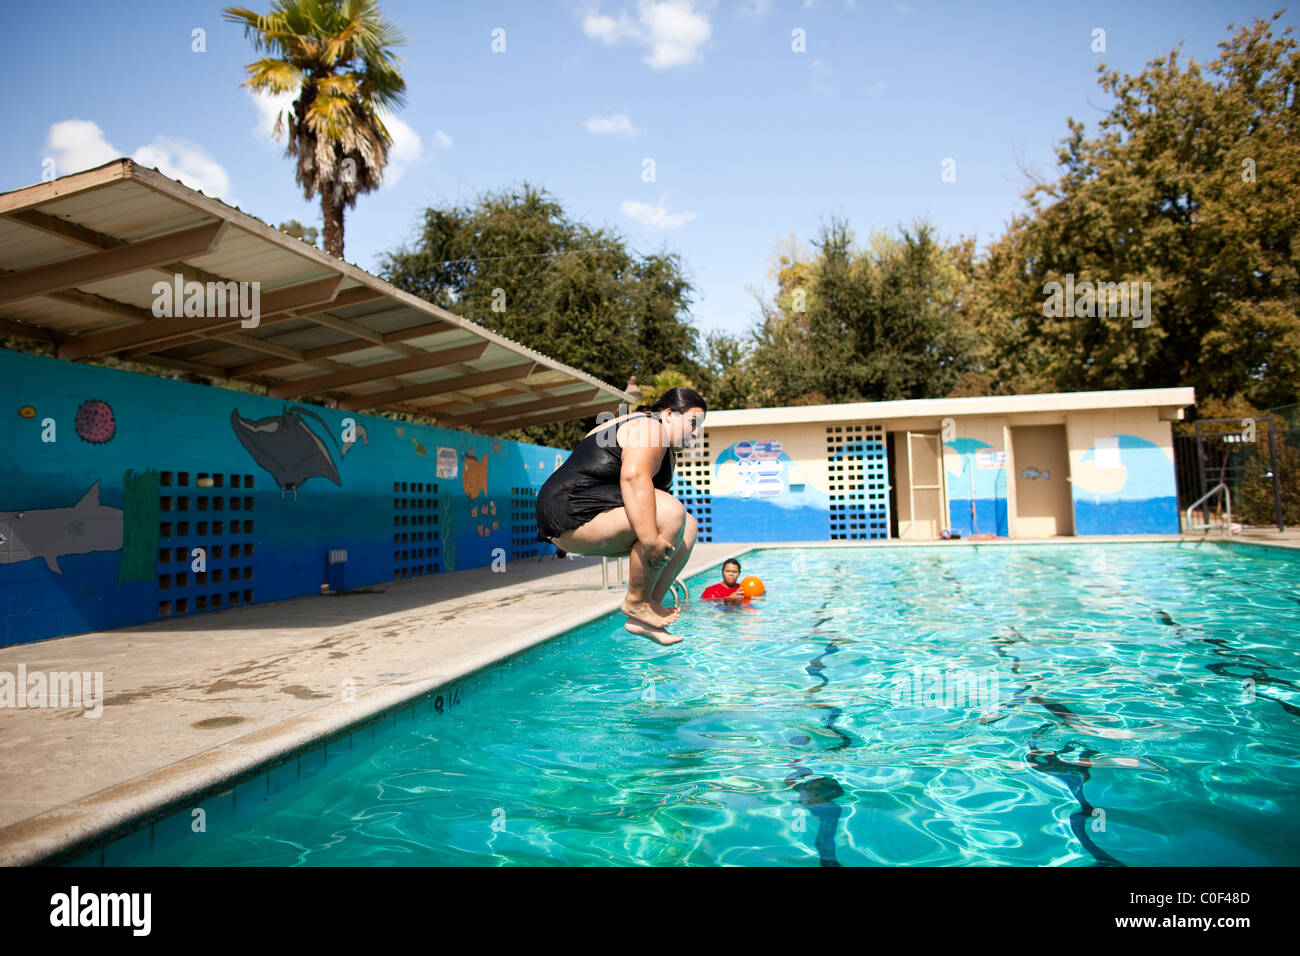 Reedley, California, Stati Uniti. Un obeso ragazza adolescente fa una palla di cannone in una piscina. Foto Stock